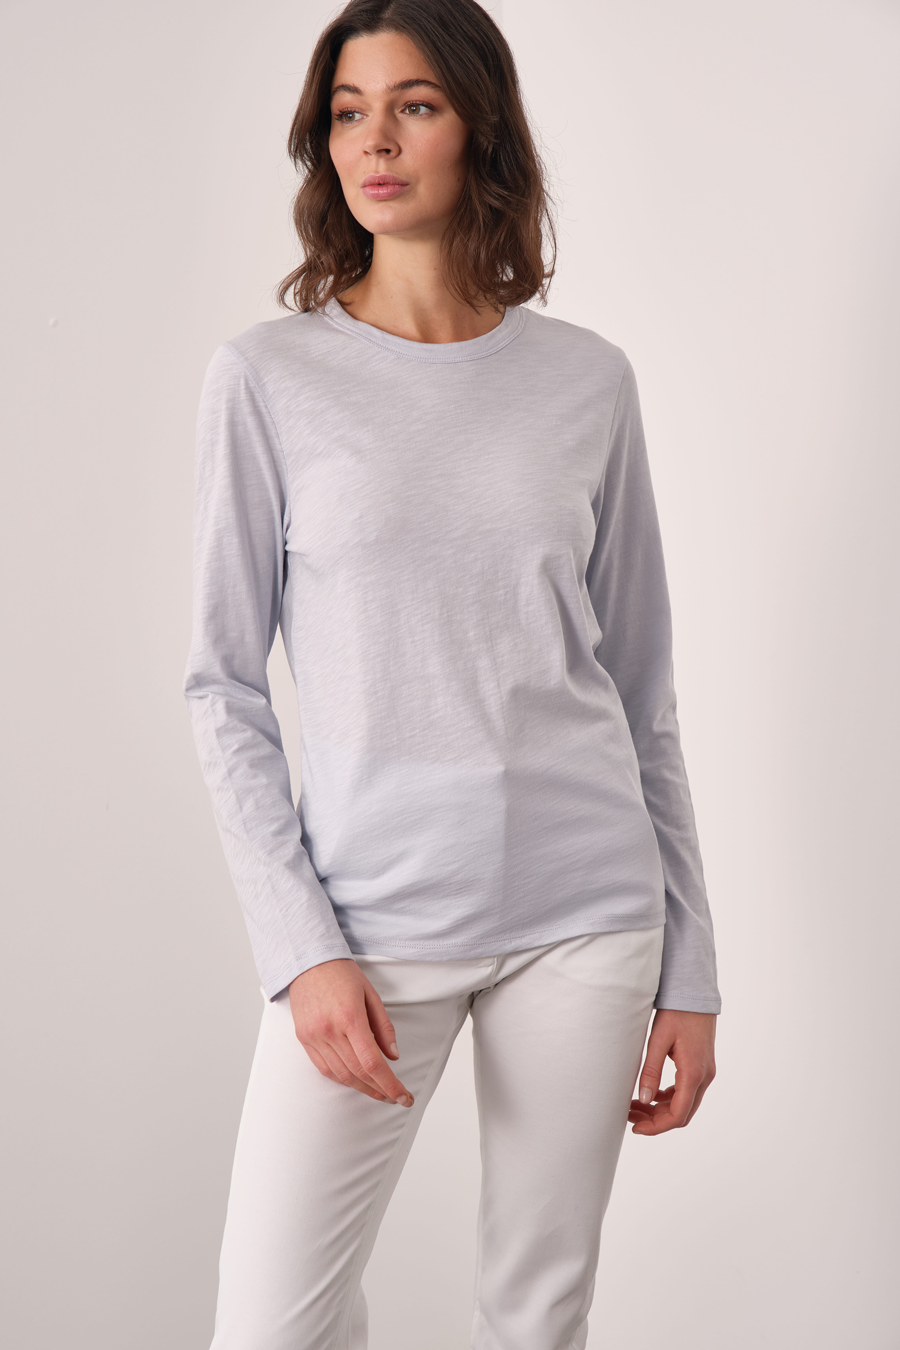 Flamlı Cotton Uzun Kollu Unisex T-shirt